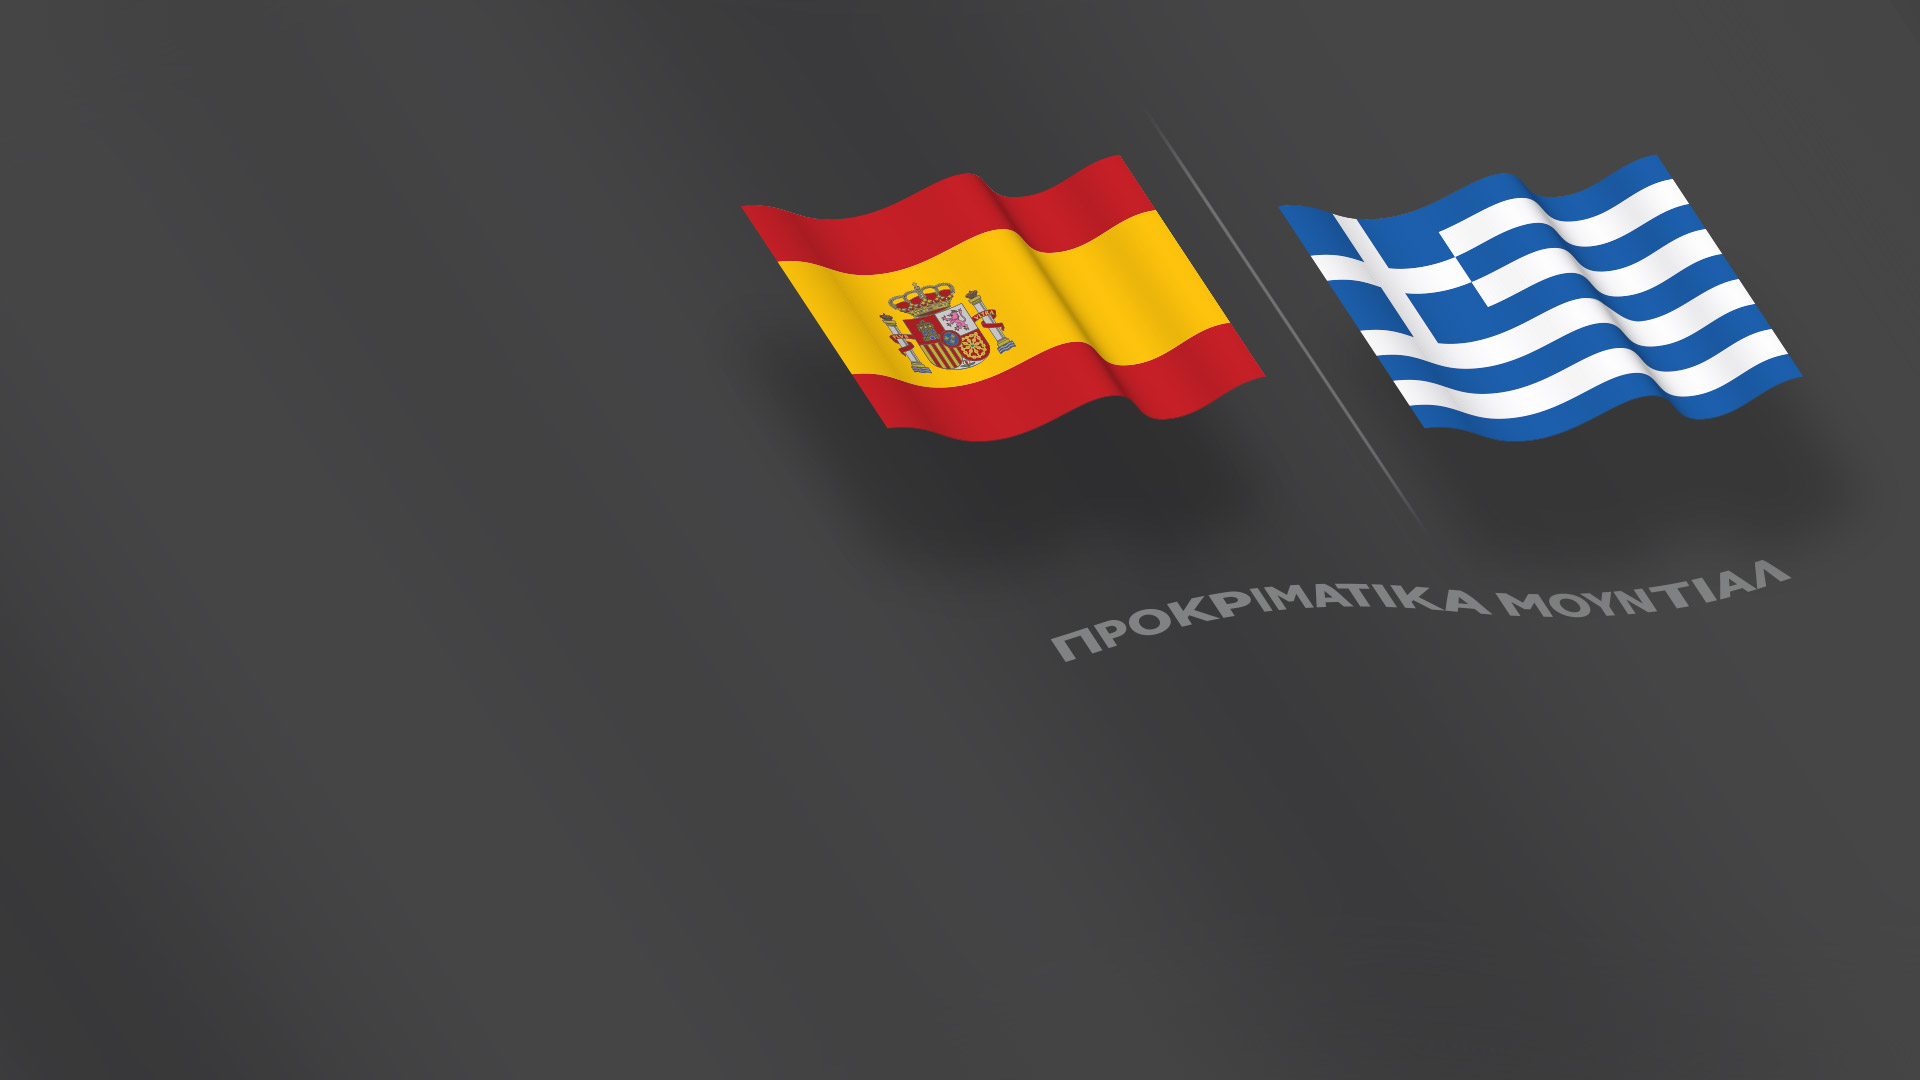 Προκριματικά Μουντιάλ - Ισπανία-Ελλάδα